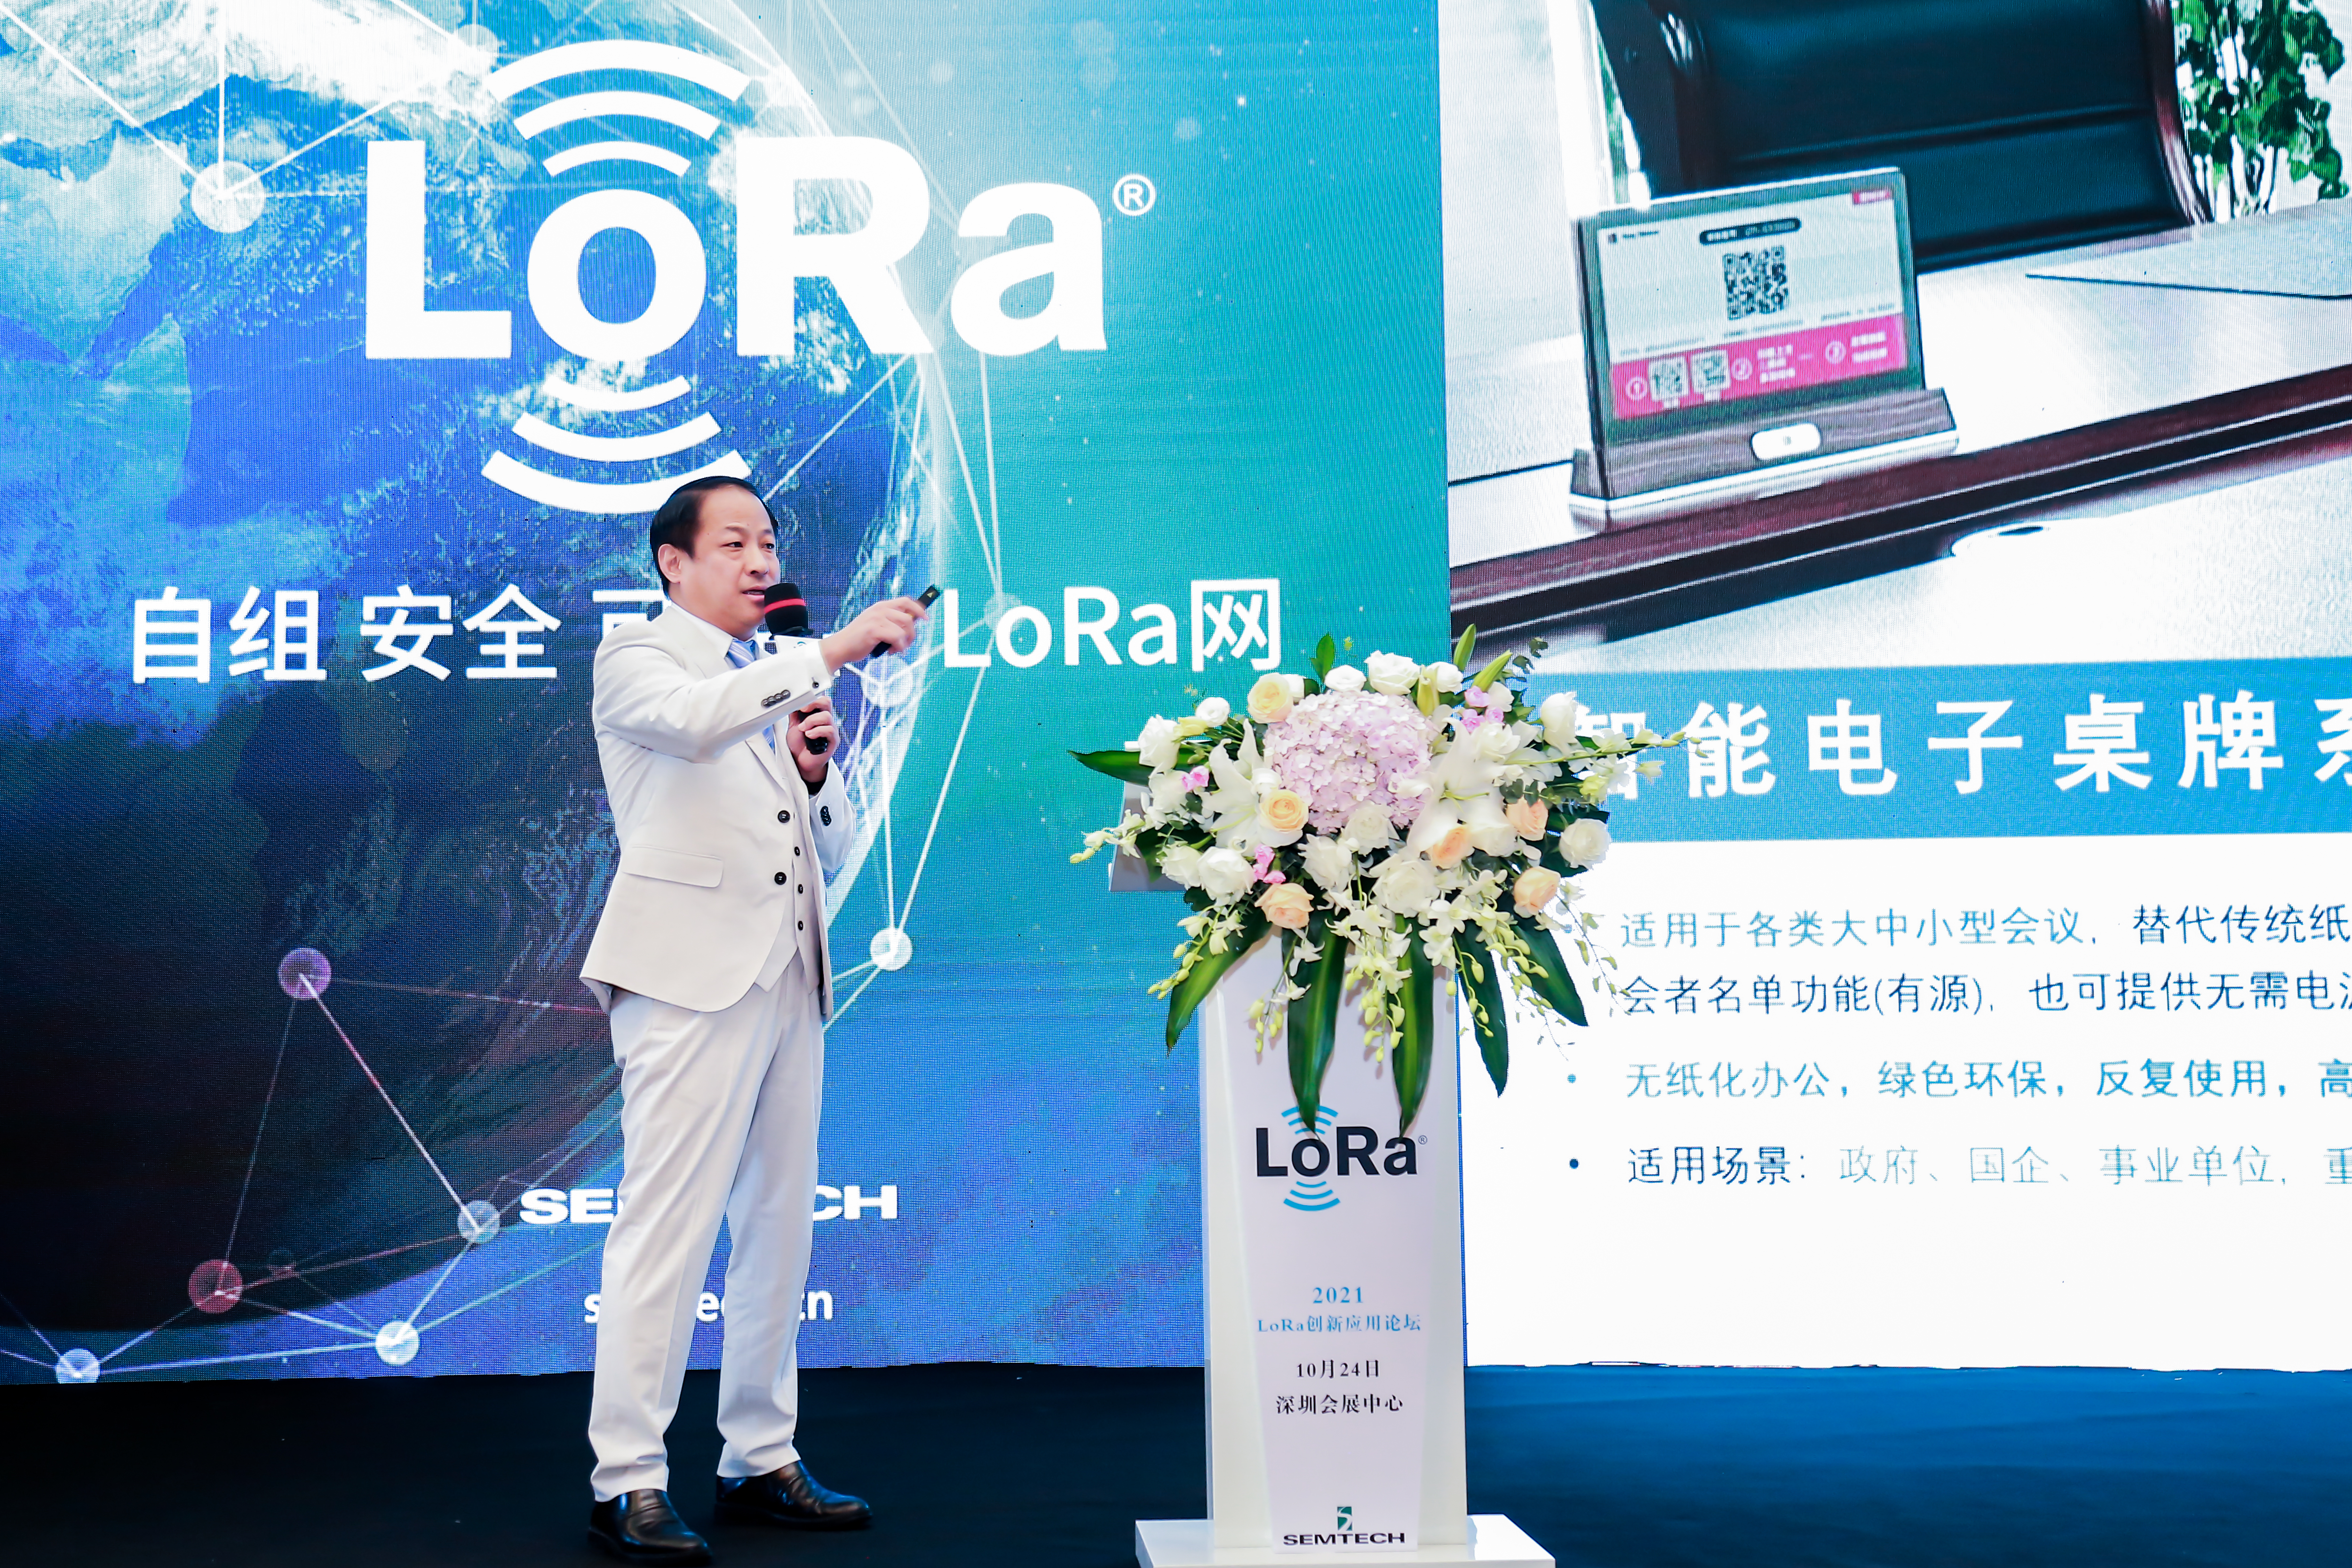 【论坛】2021 LoRa创新应用论坛 